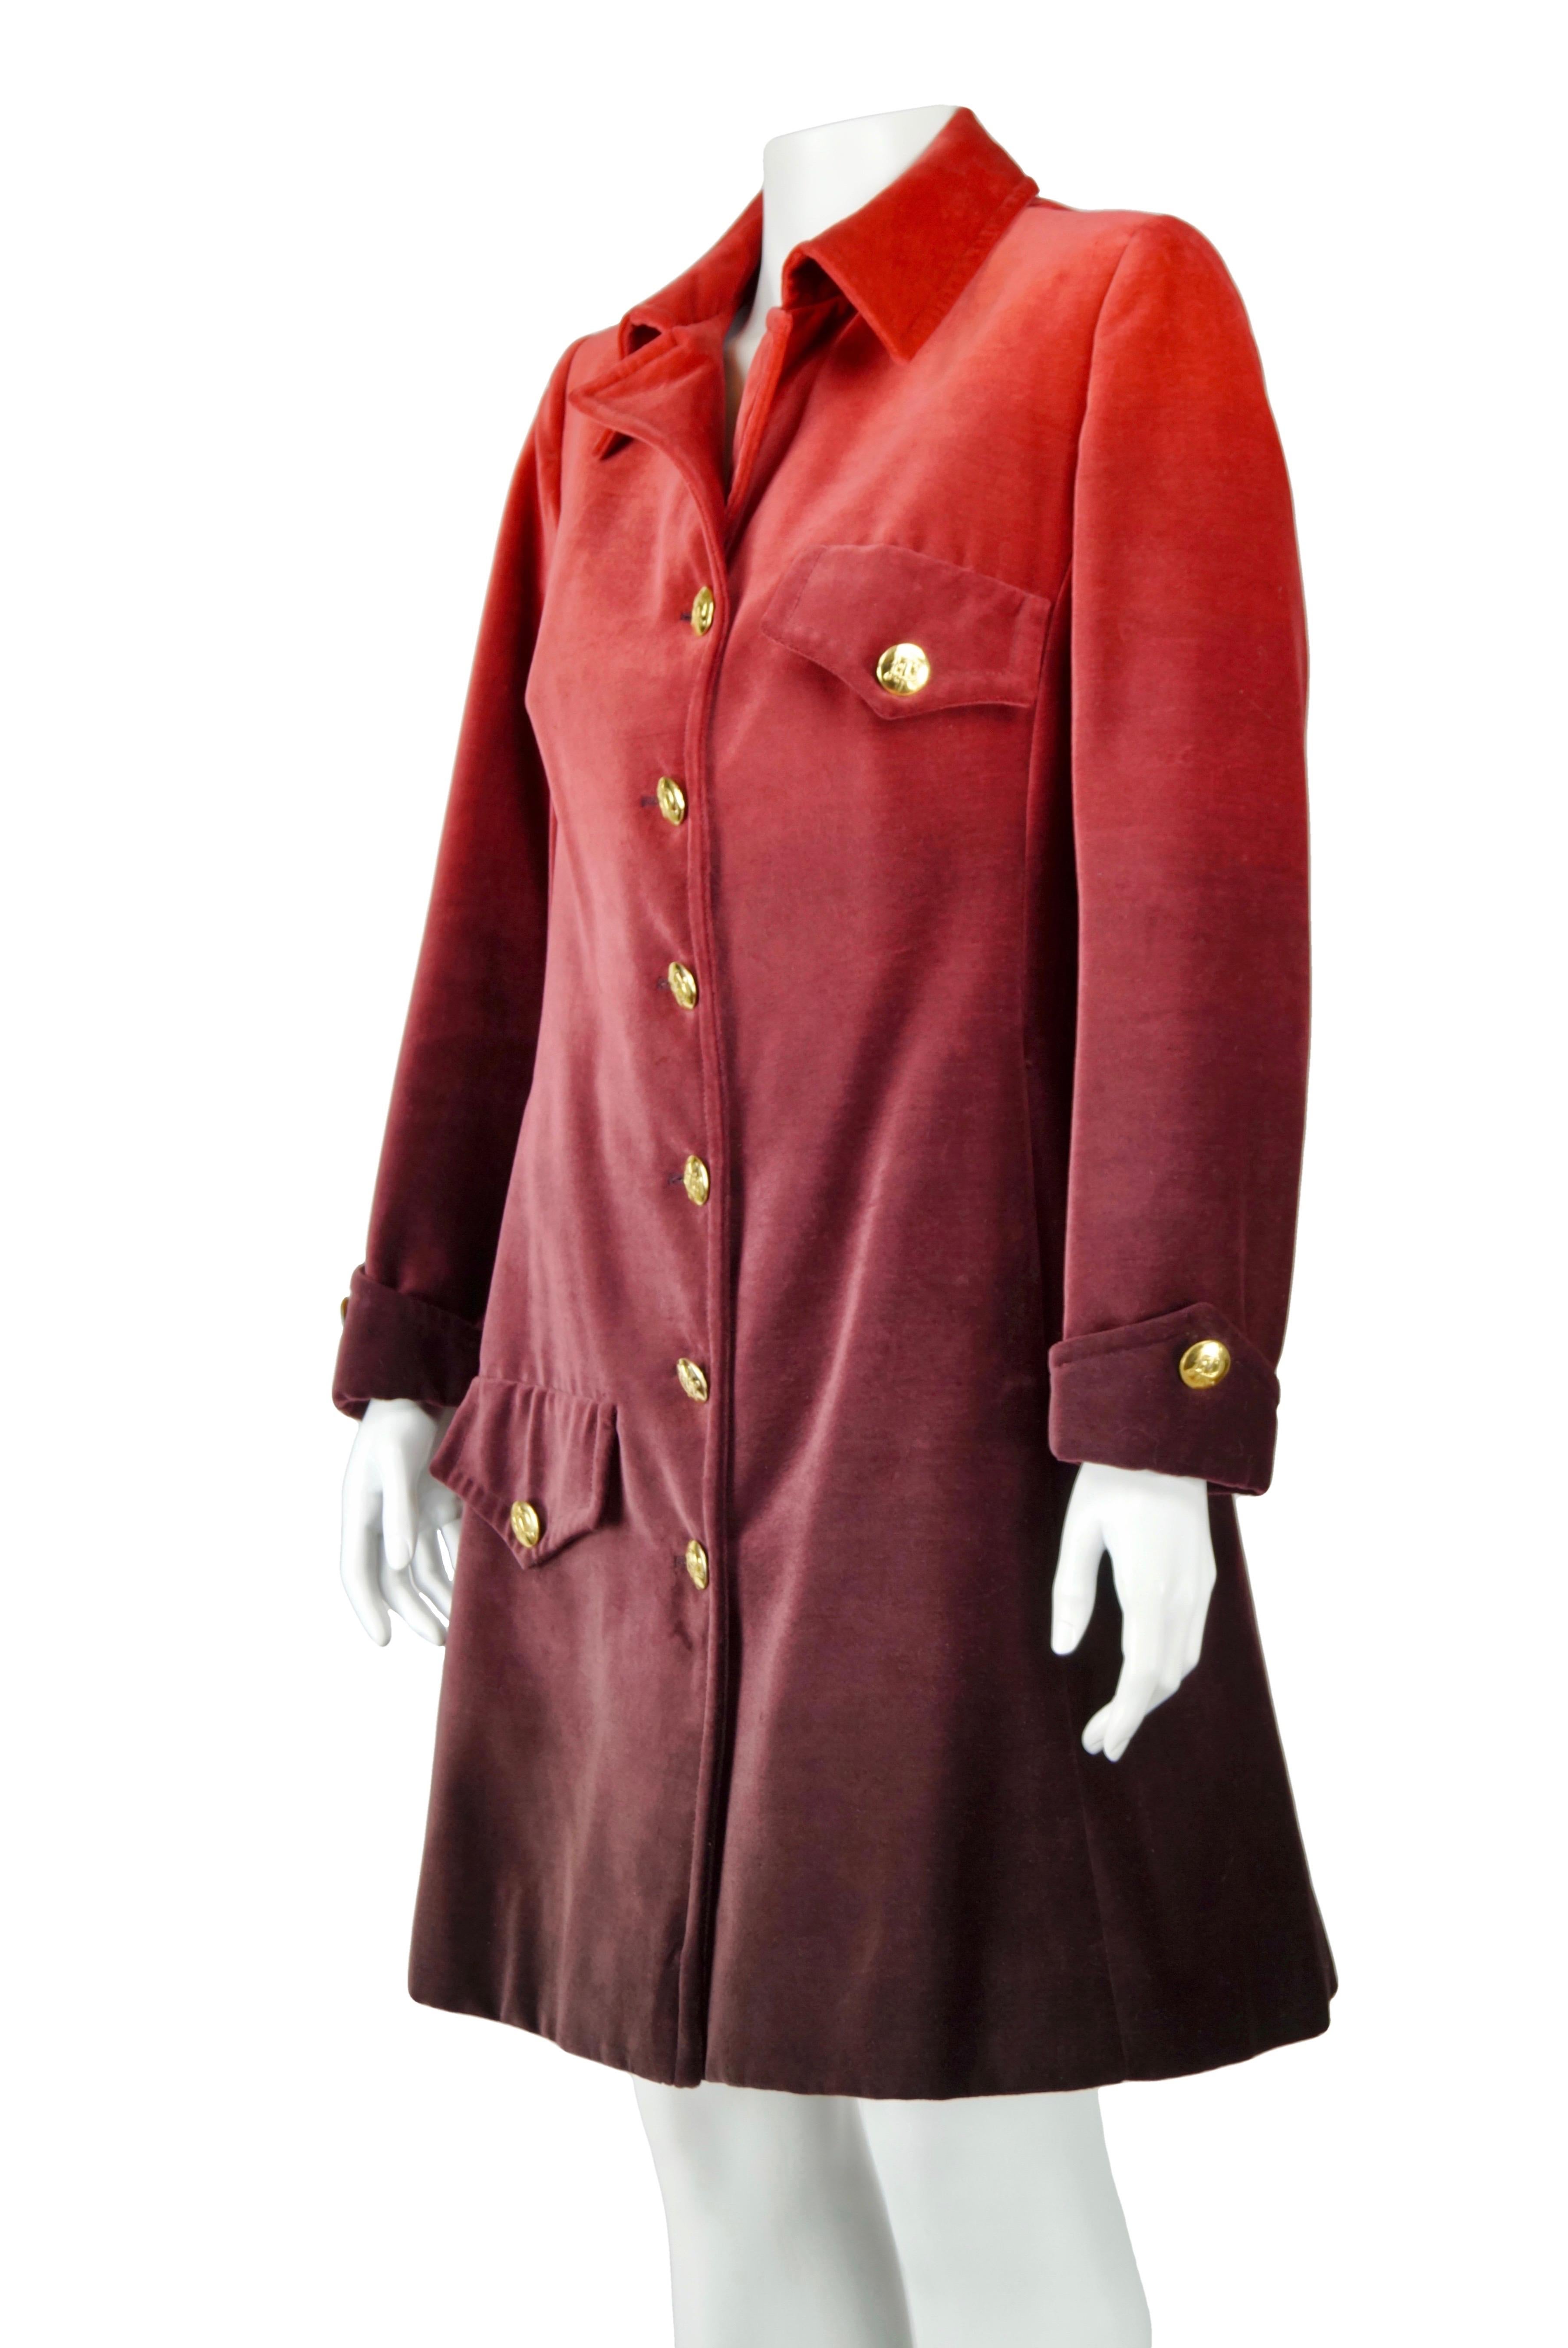 Marron Roberta di Camerino - Manteau rouge en velours vintage, années 70 en vente